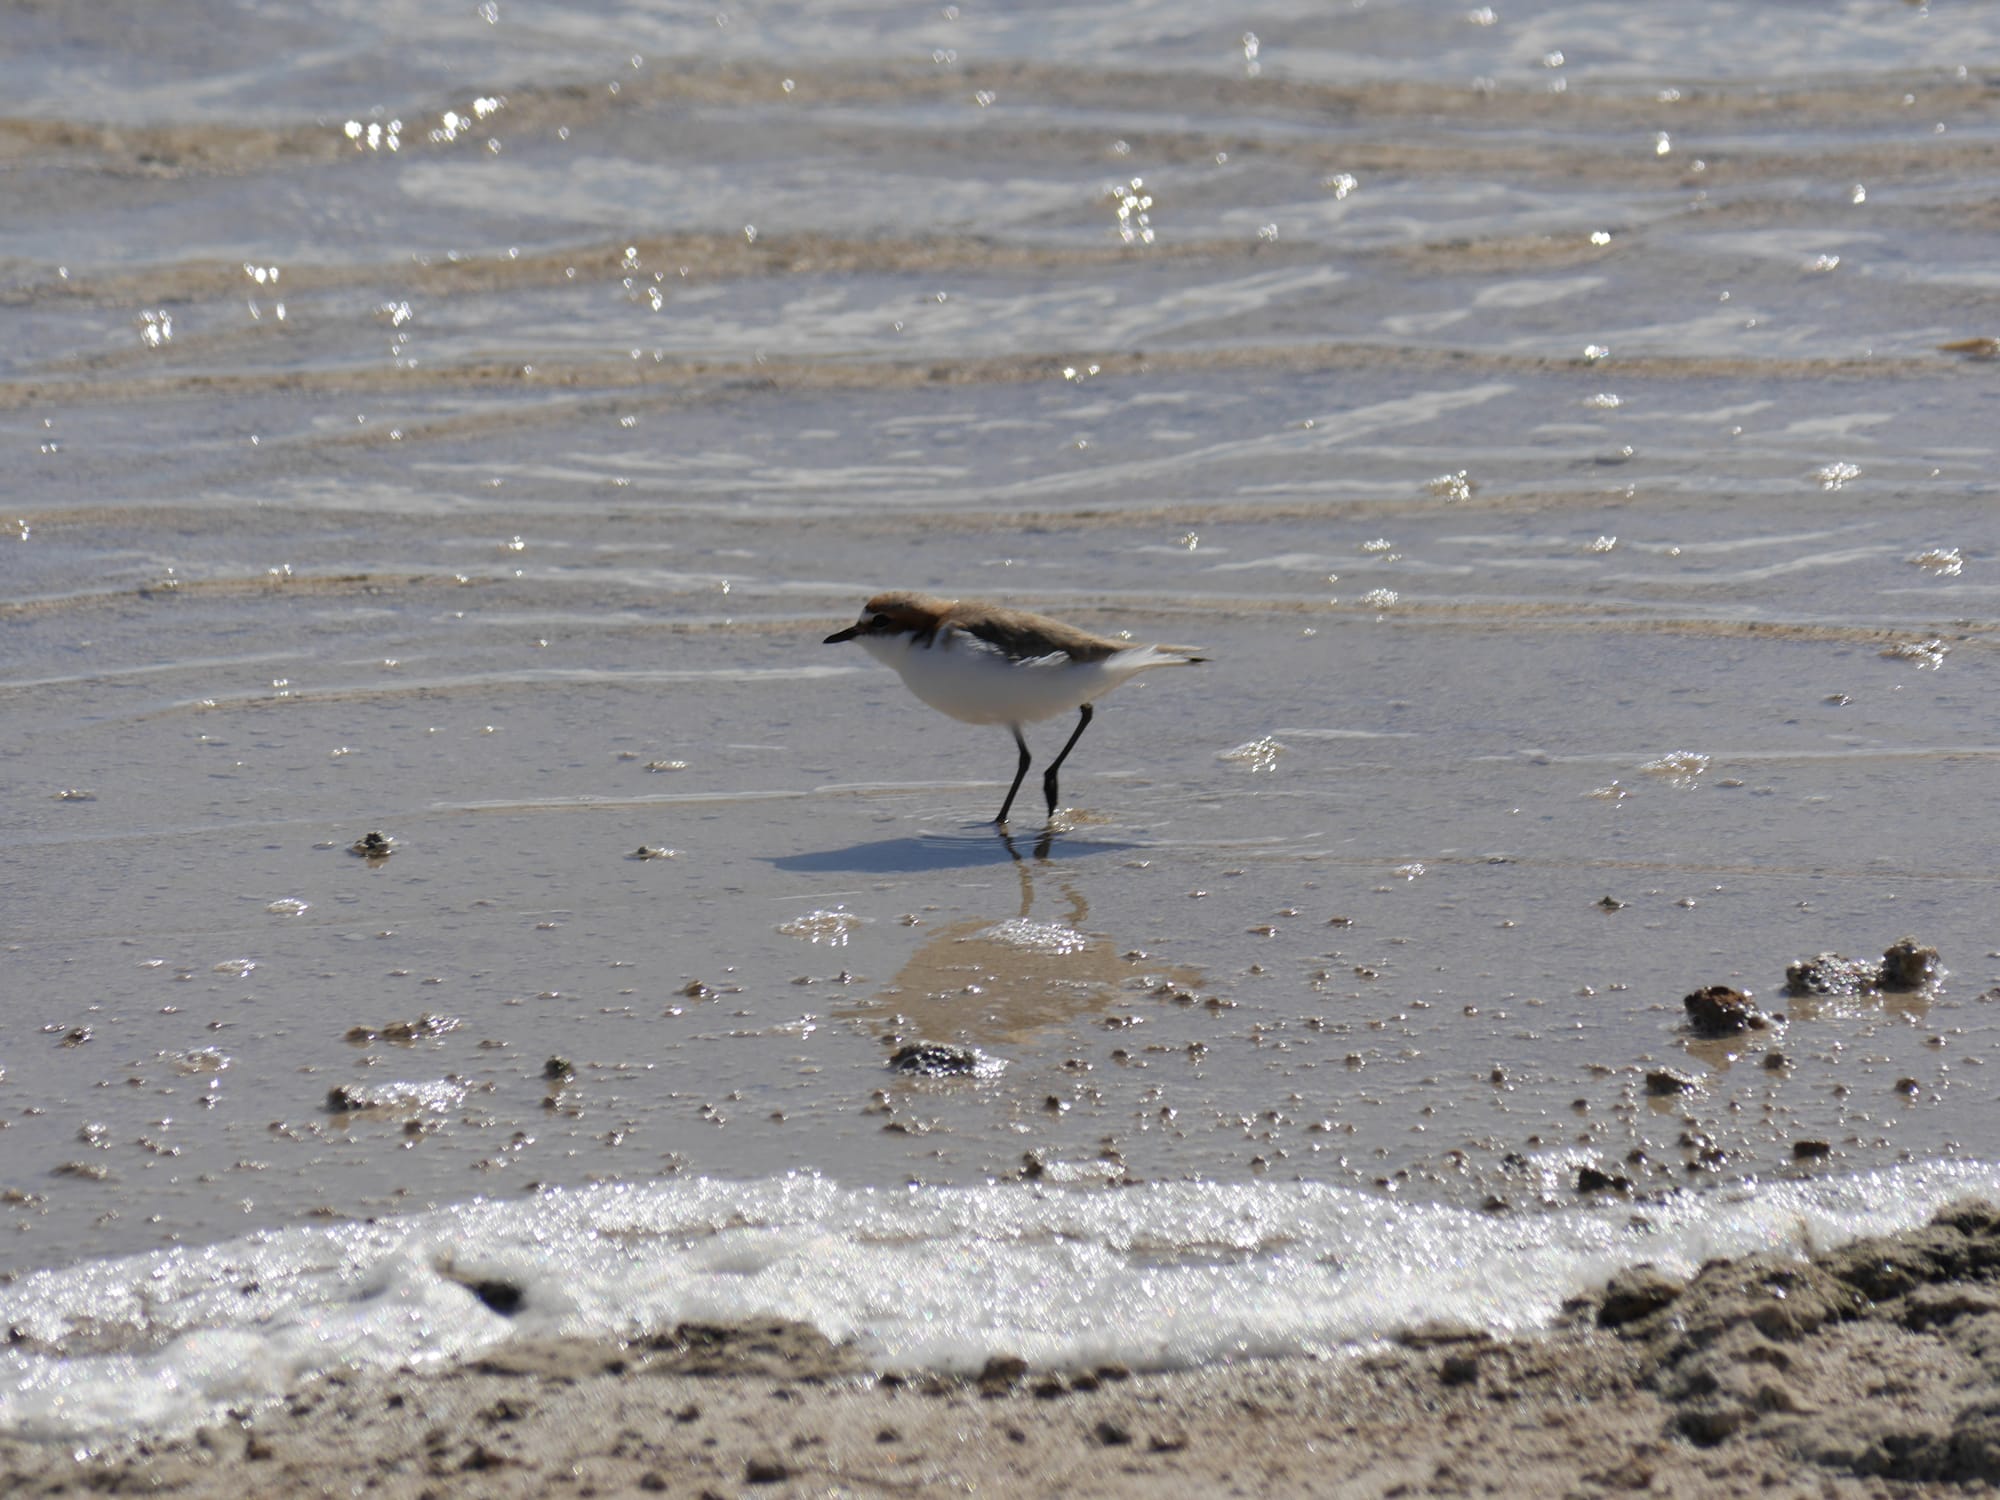 Photo by Author — wildlife at Lake Thetis, Cervantes, WA 6511, Australia